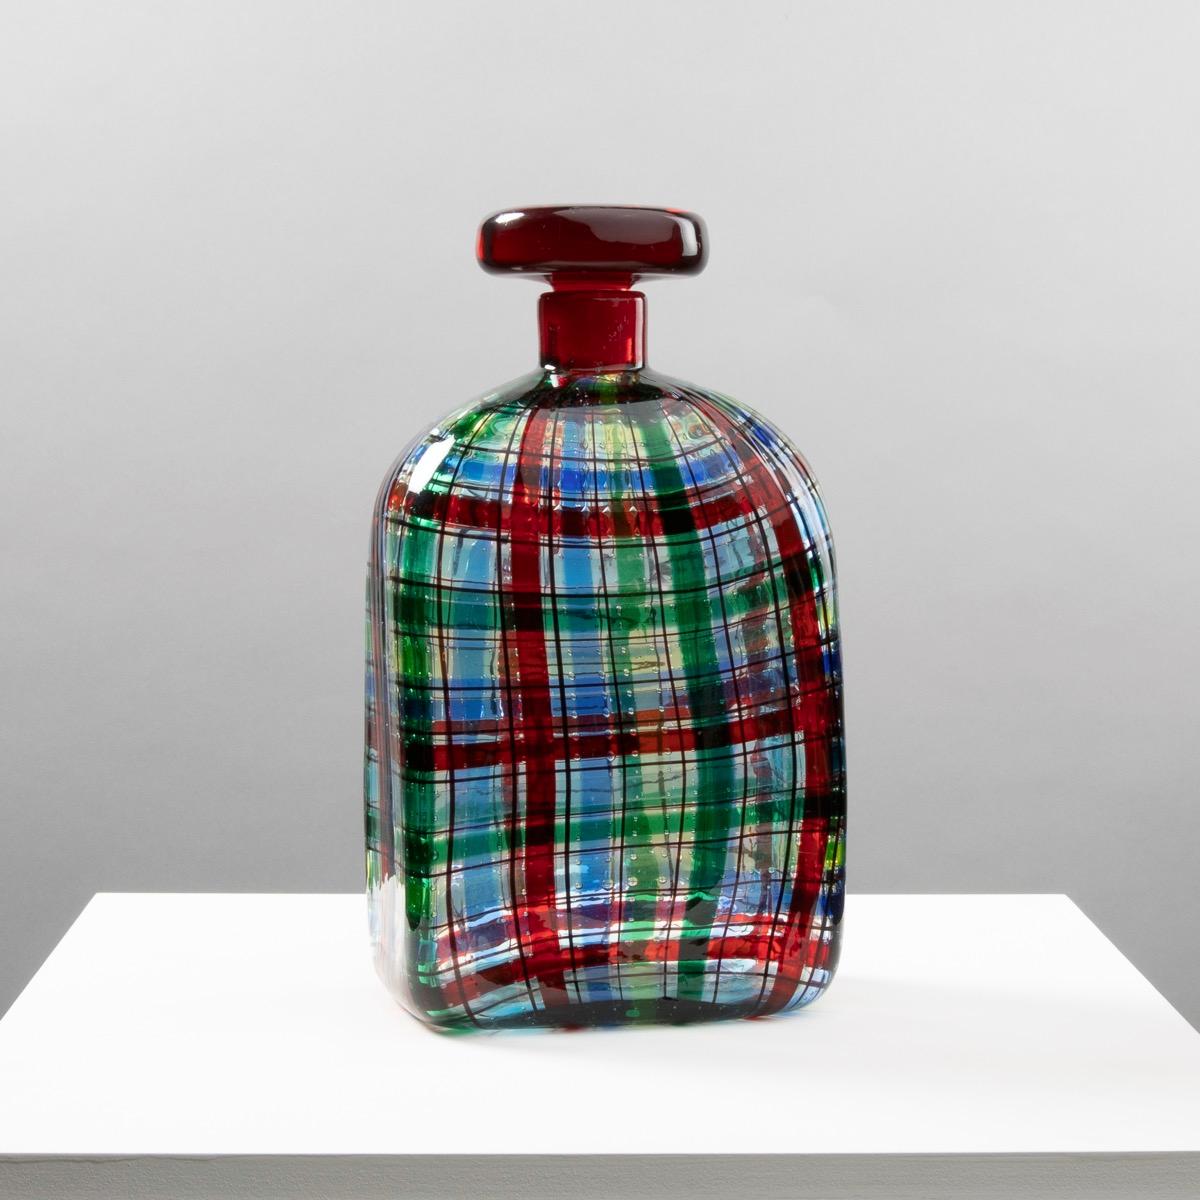 Im Jahr 1969, dem Jahr, in dem alles möglich zu sein scheint, beauftragt Christian Dior Ercole Barovier mit der Entwicklung, dem Design und der Herstellung einer Serie von Flaschen mit Stopfen. Diese Serie ist von schottischen Webereien inspiriert